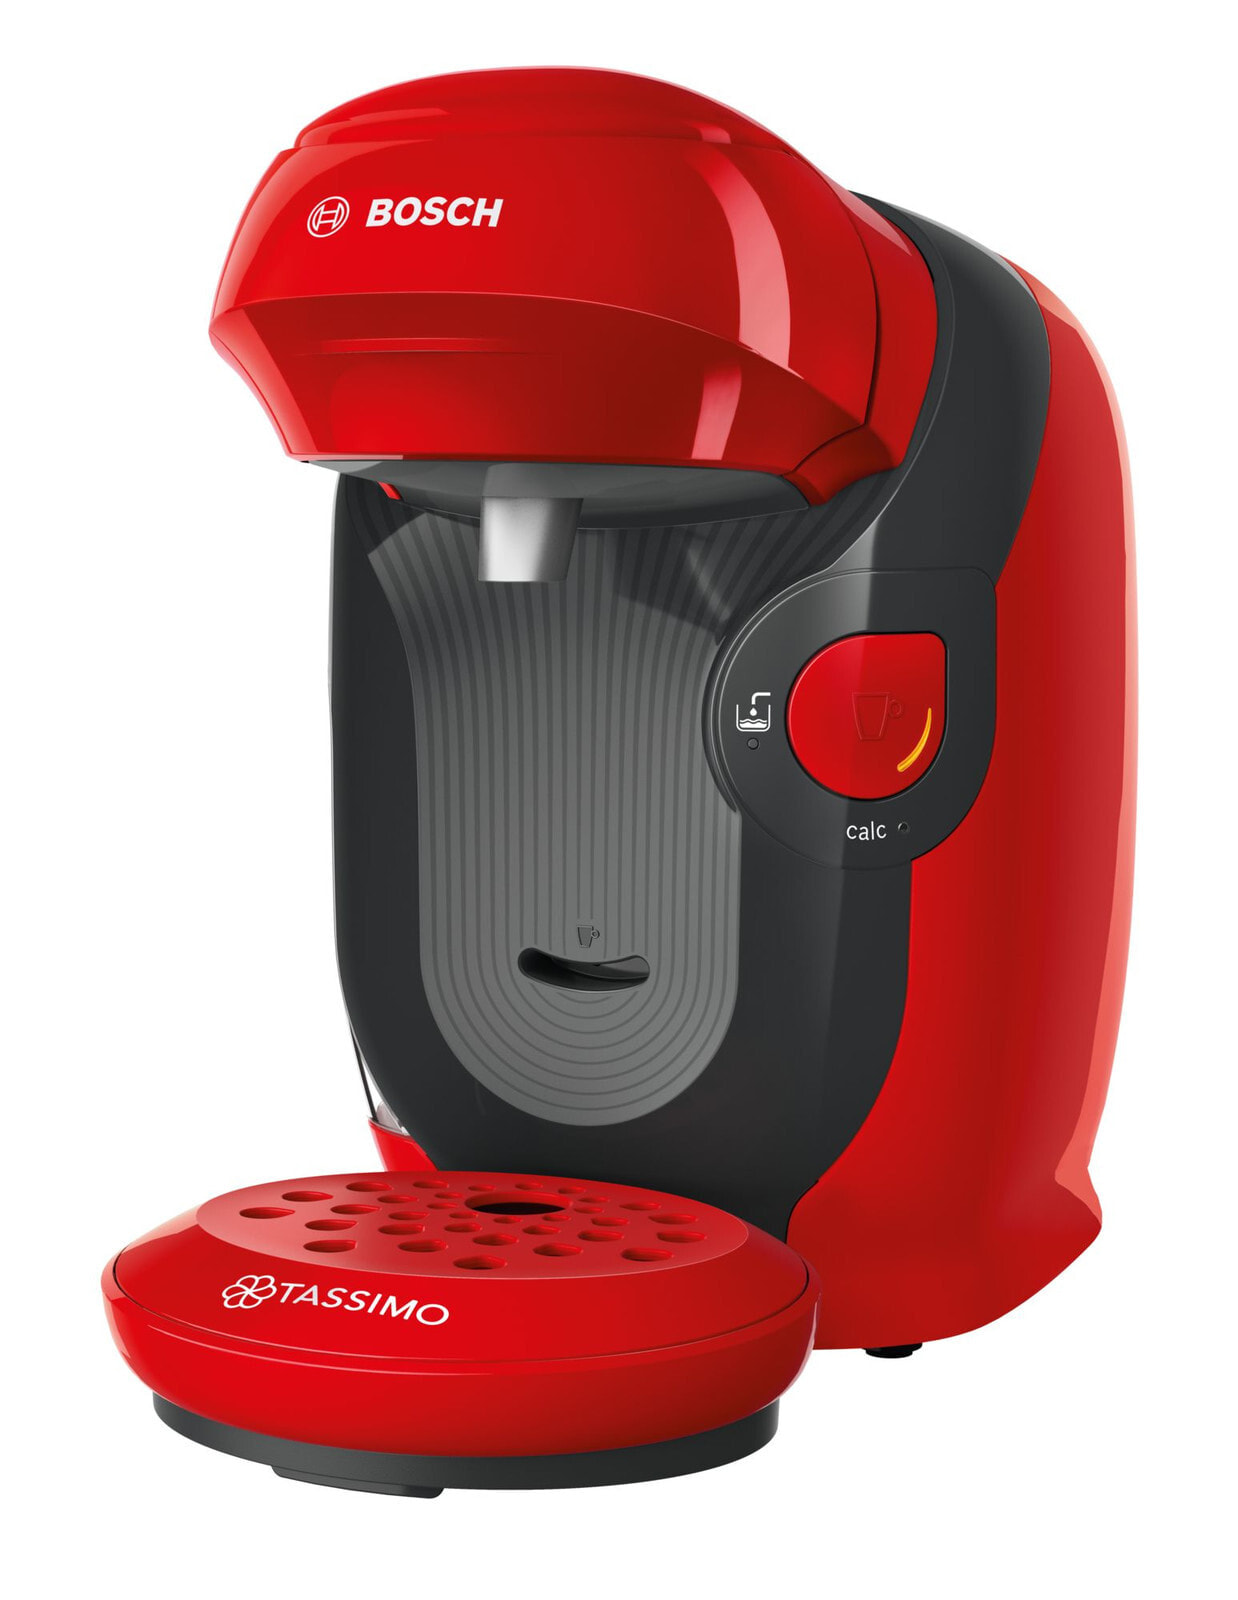 Bosch Tassimo Style TAS1103 кофеварка Капсульная кофеварка 0,7 L Автоматическая